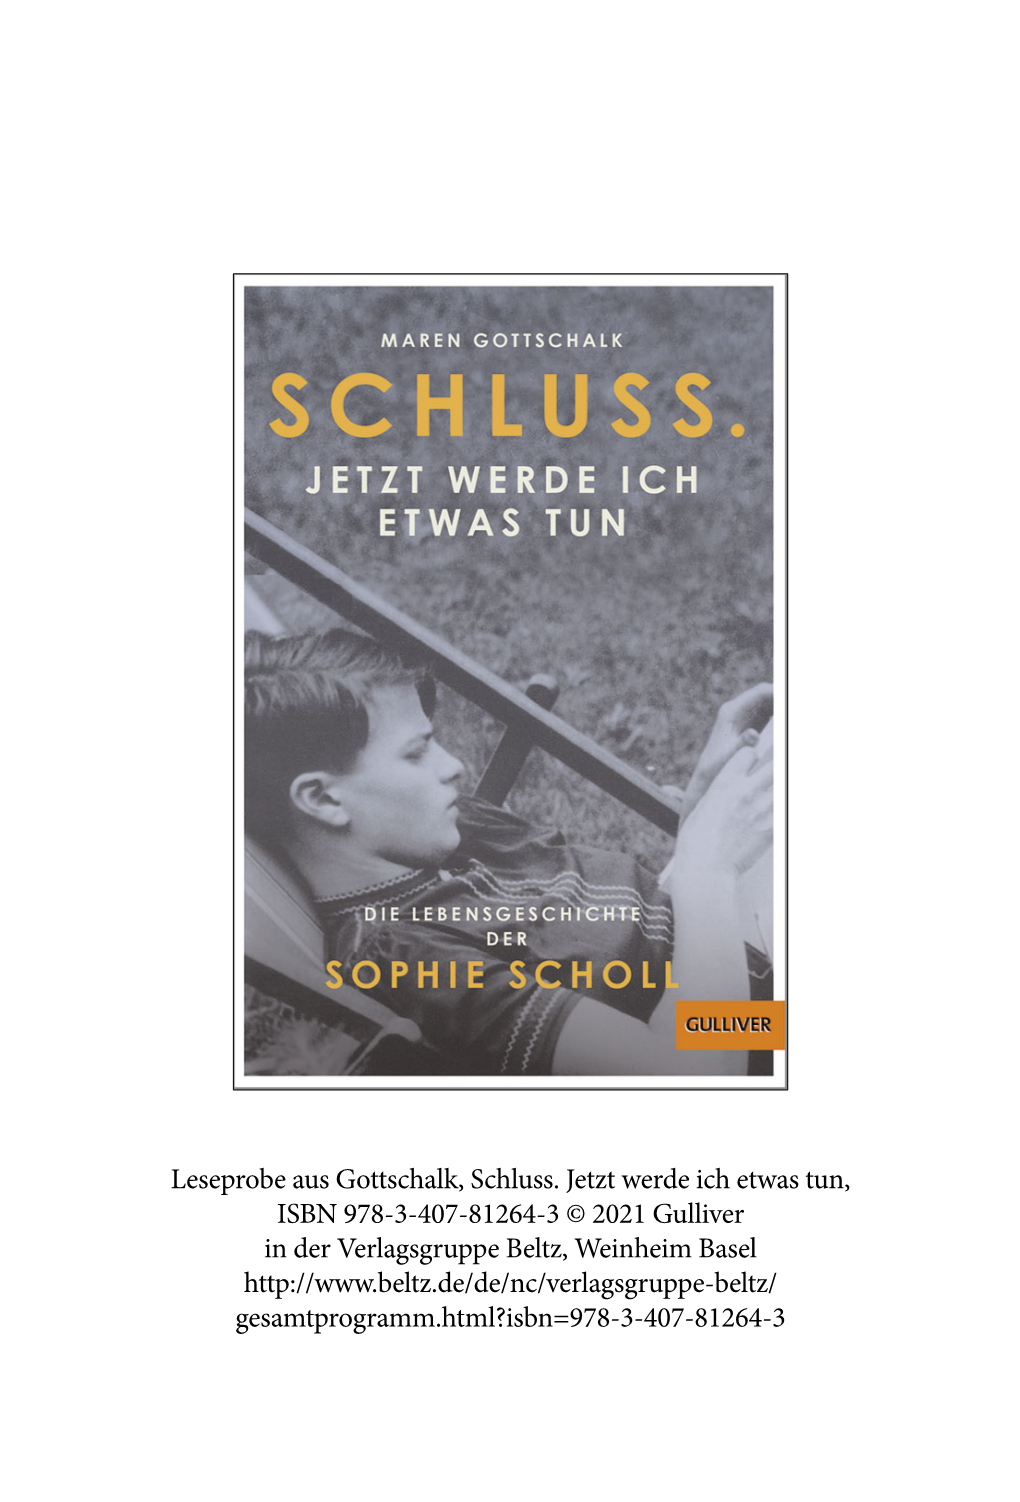 Leseprobe Aus Gottschalk, Schluss. Jetzt Werde Ich Etwas Tun, ISBN 978